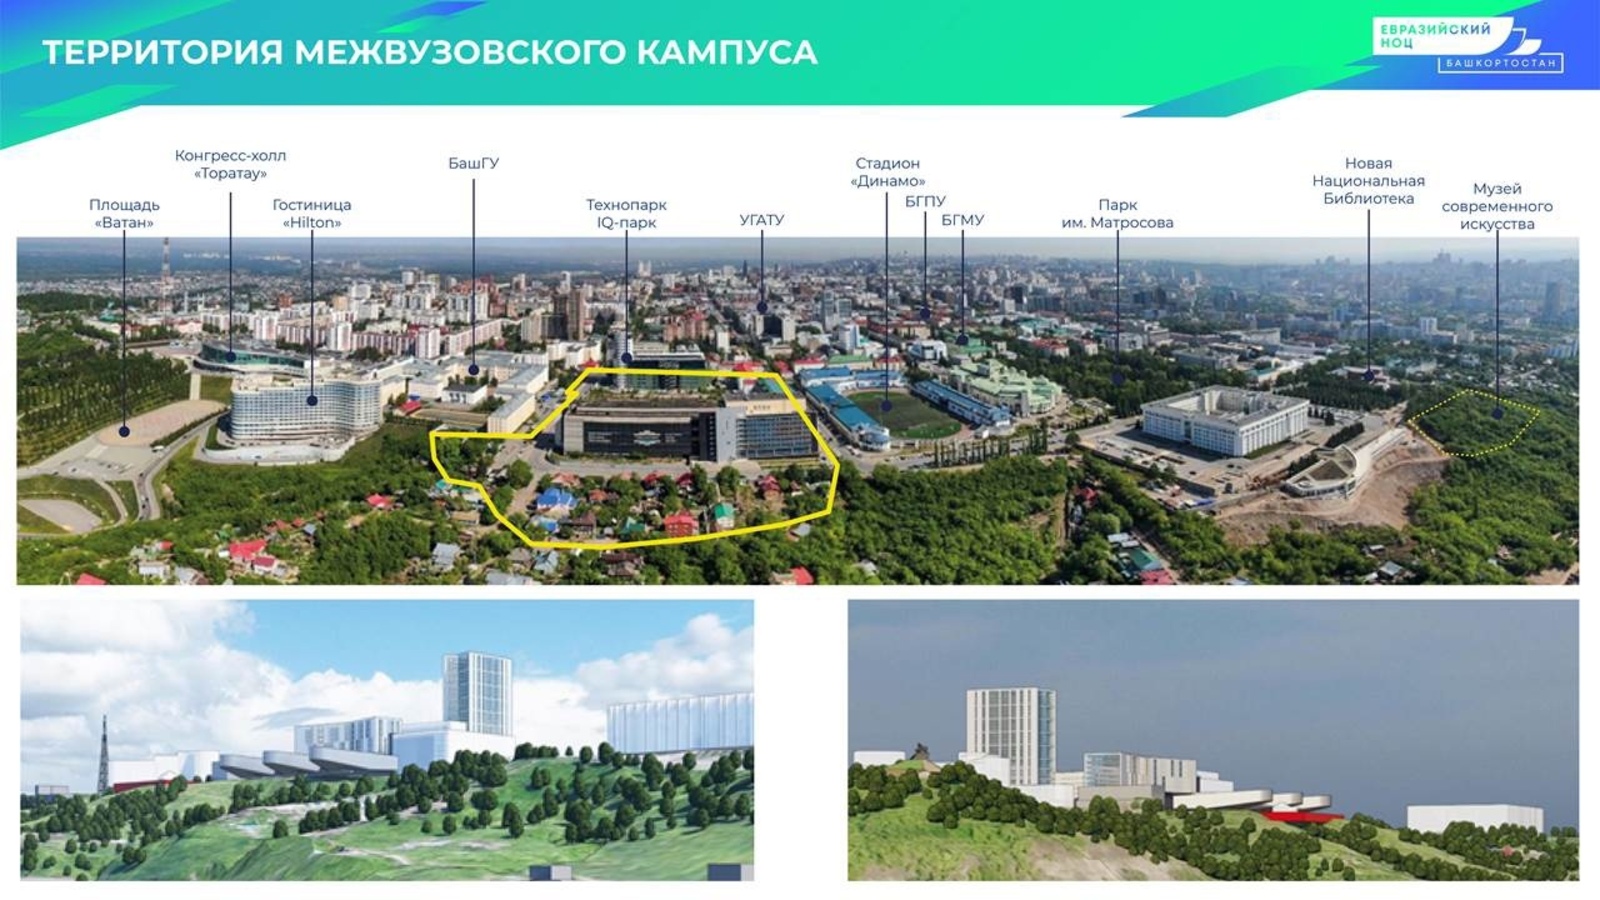 Правительство России выделит бюджетный грант на строительство студенческого кампуса в Уфе